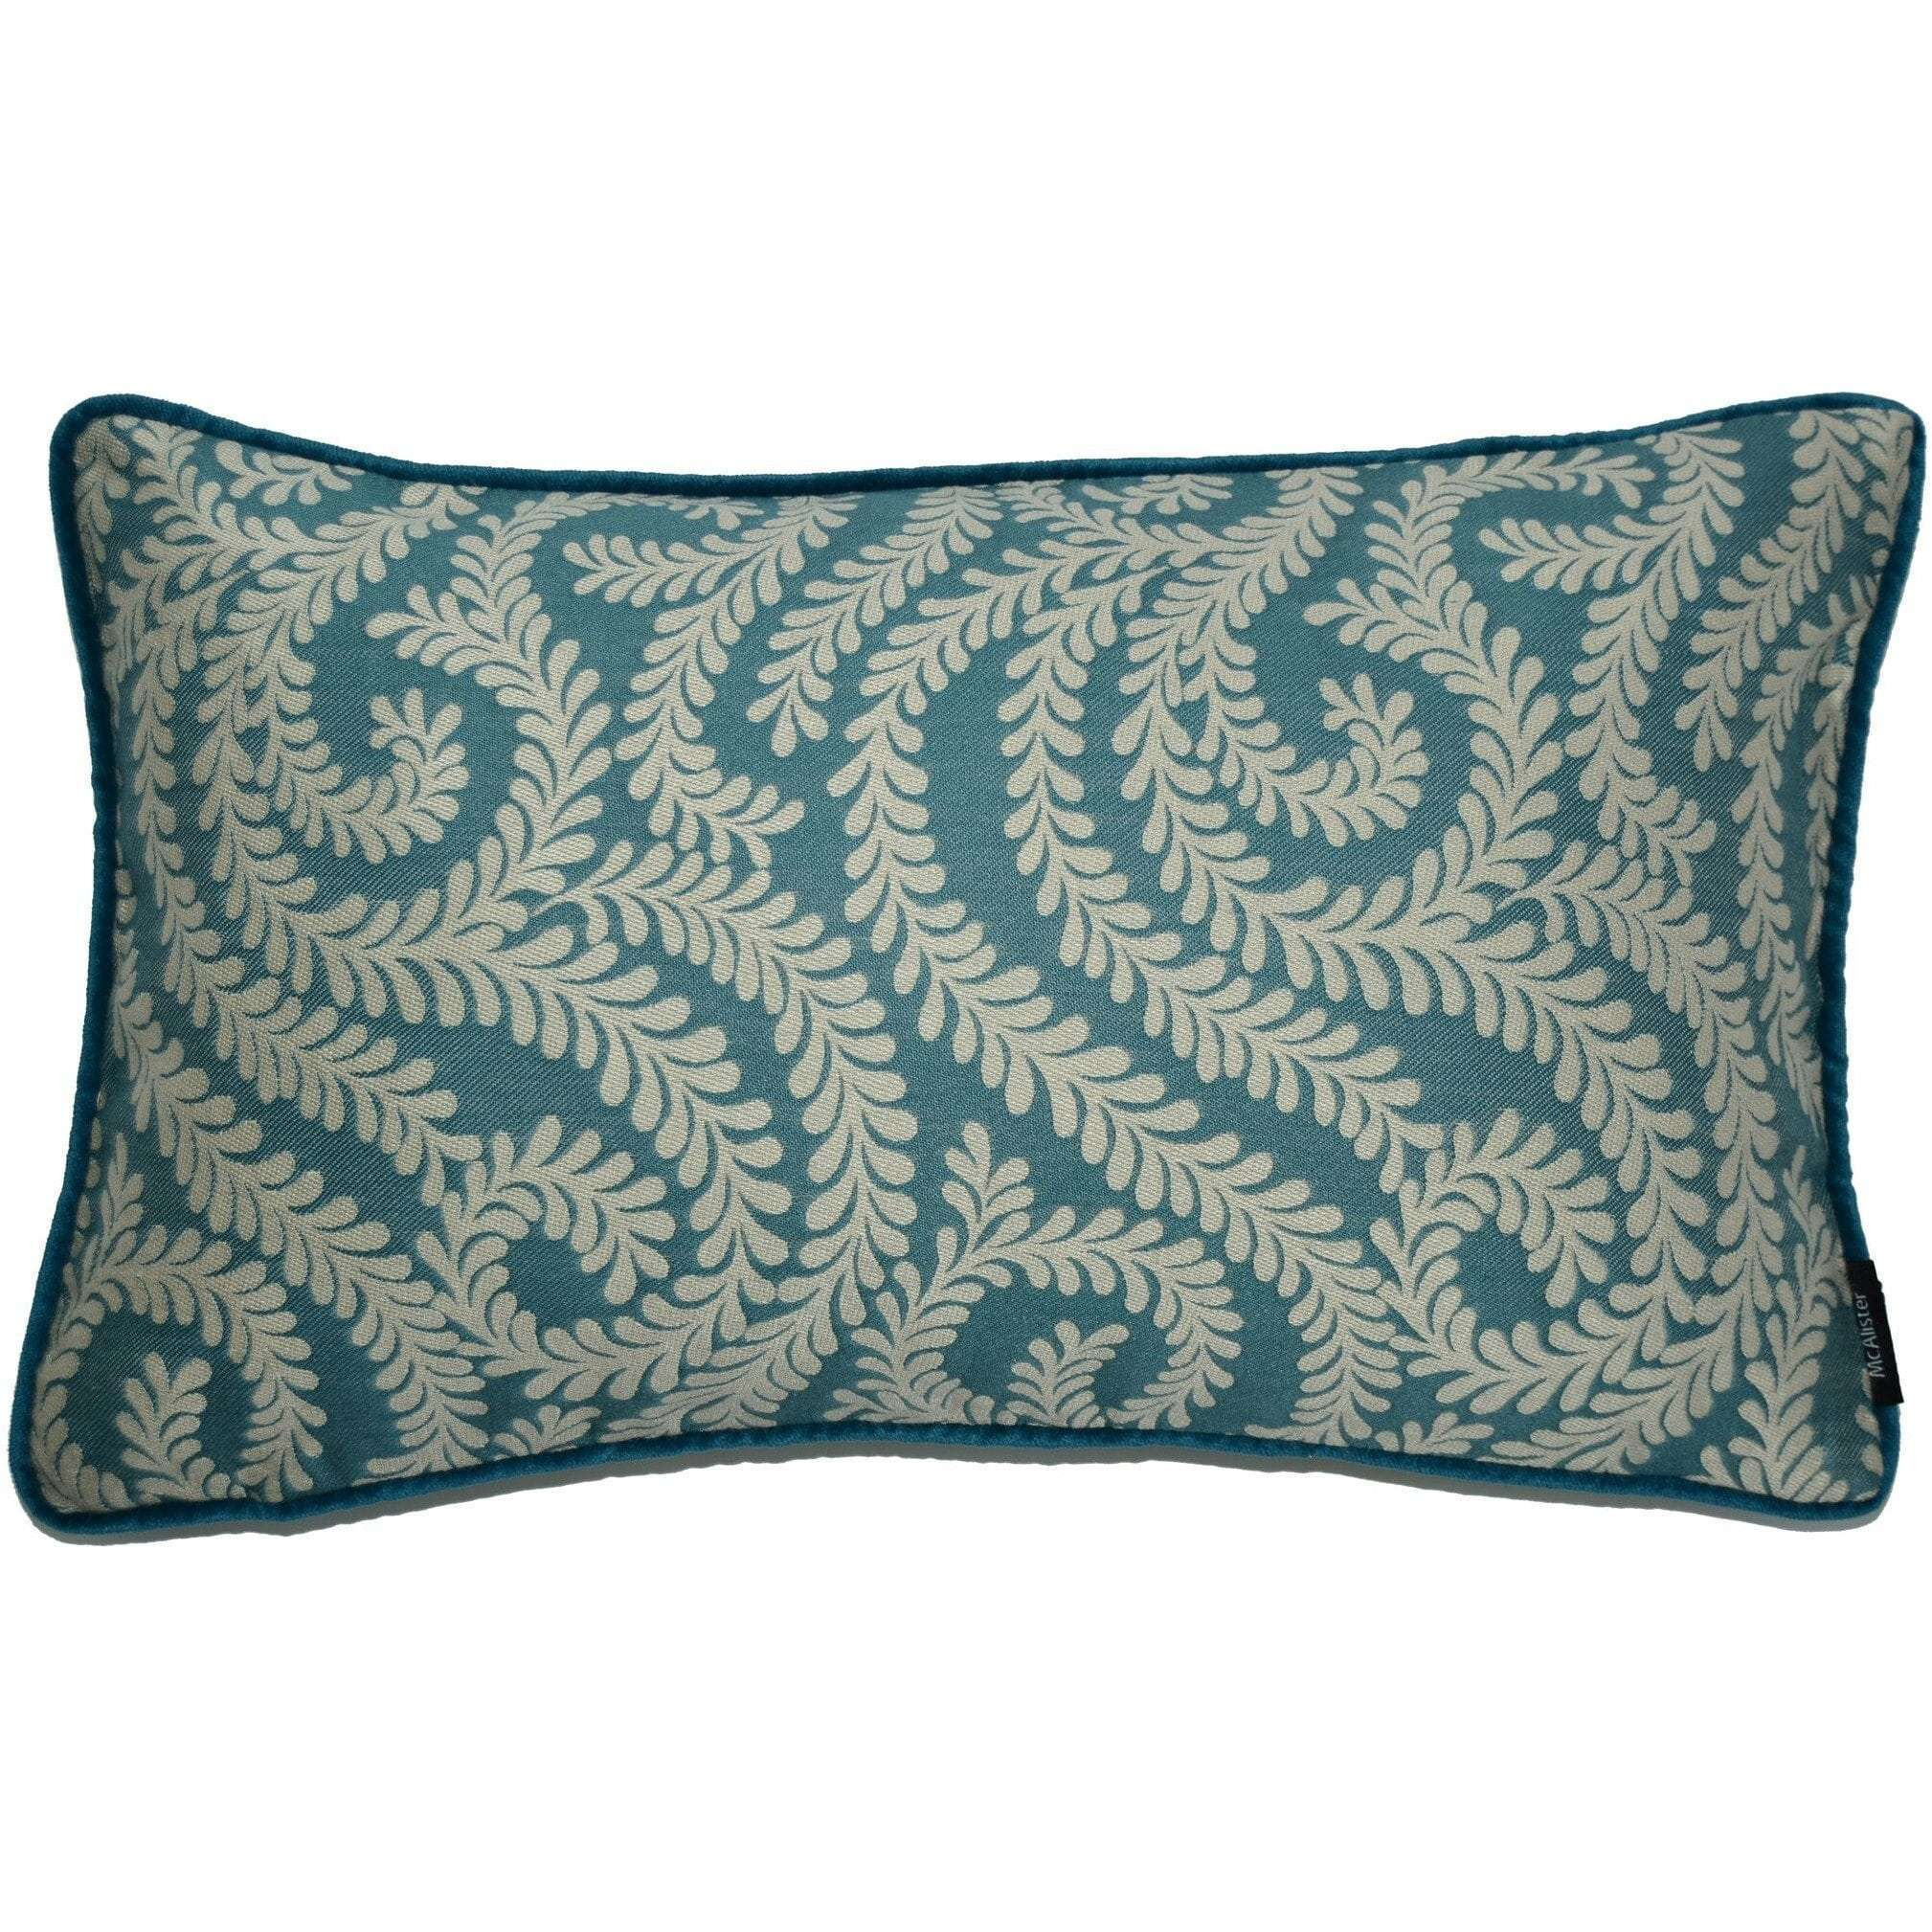 Little Leaf Teal Pillow, Polyester Filler / 50cm x 30cm